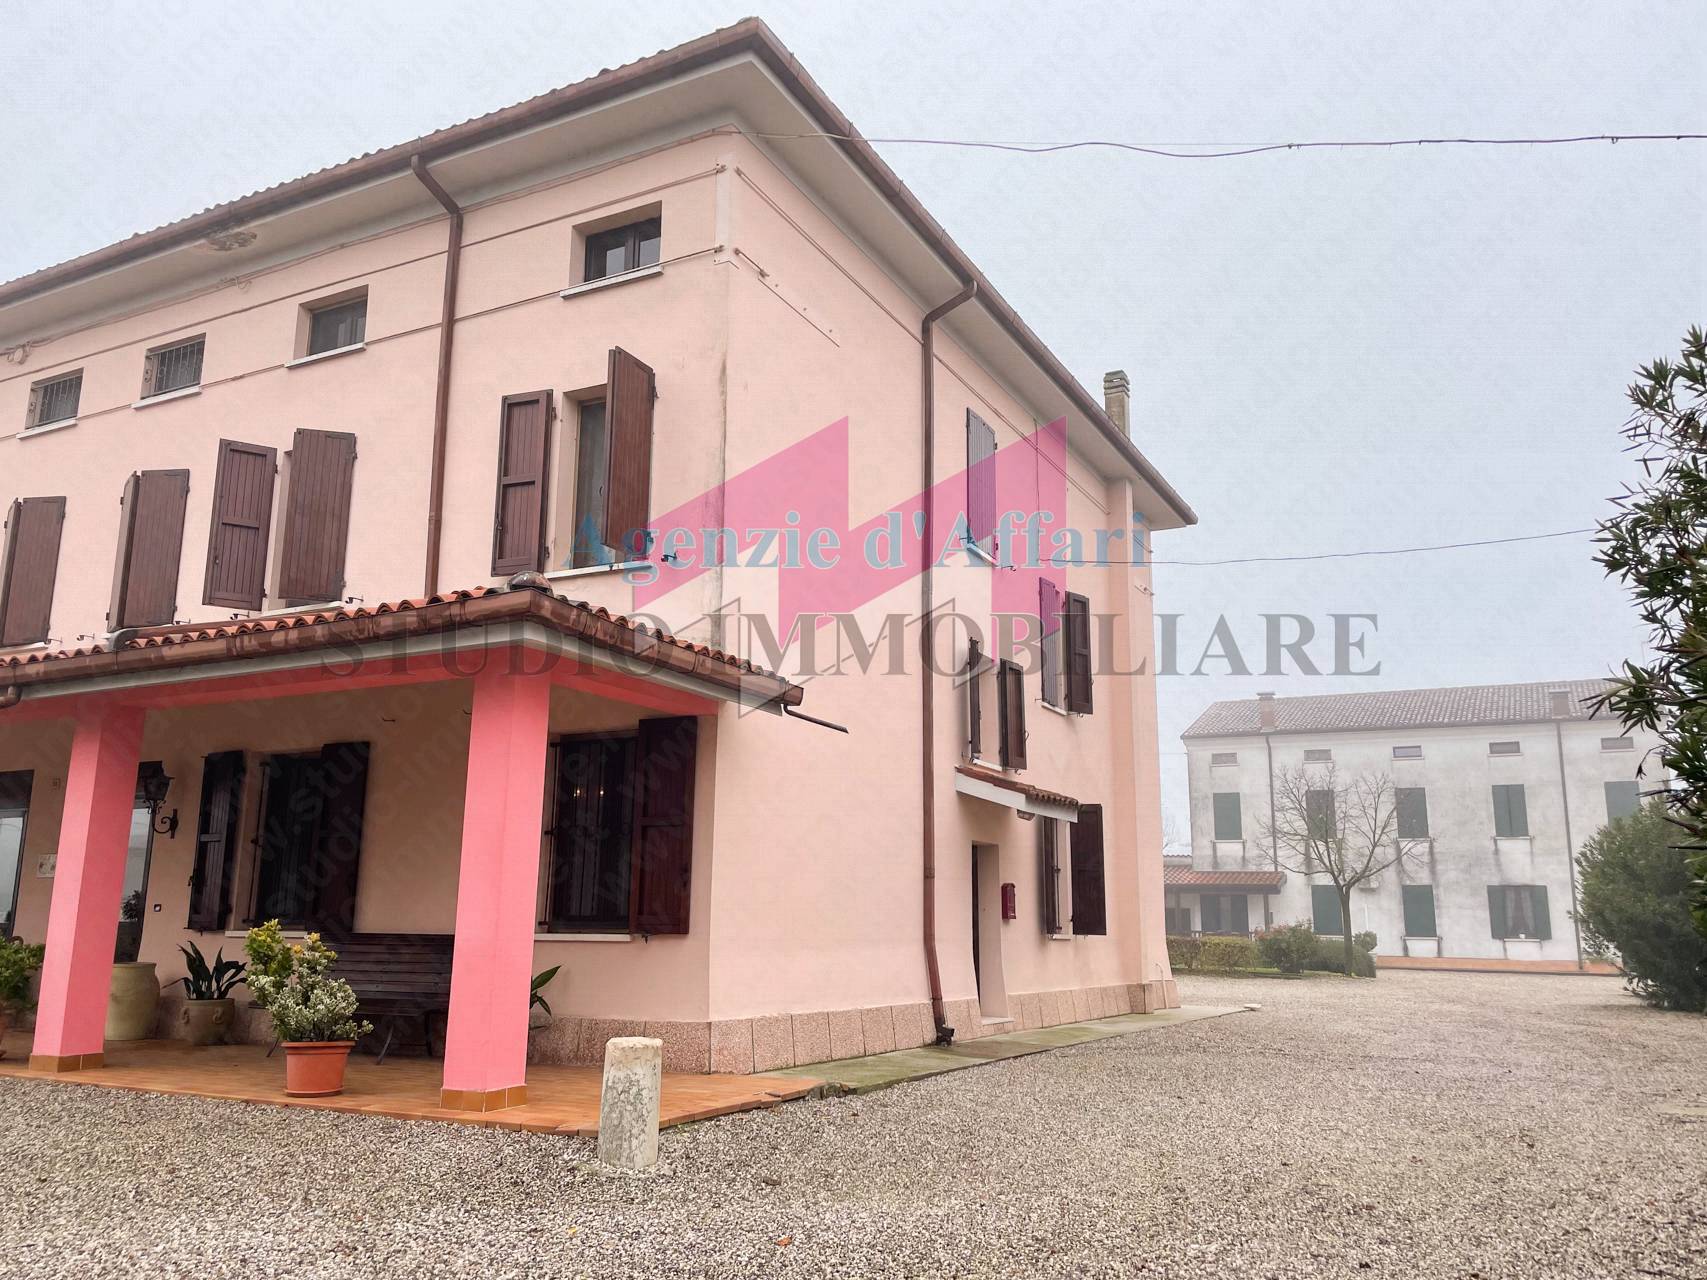 Villa in vendita a Poggio Rusco, 5 locali, prezzo € 125.000 | PortaleAgenzieImmobiliari.it